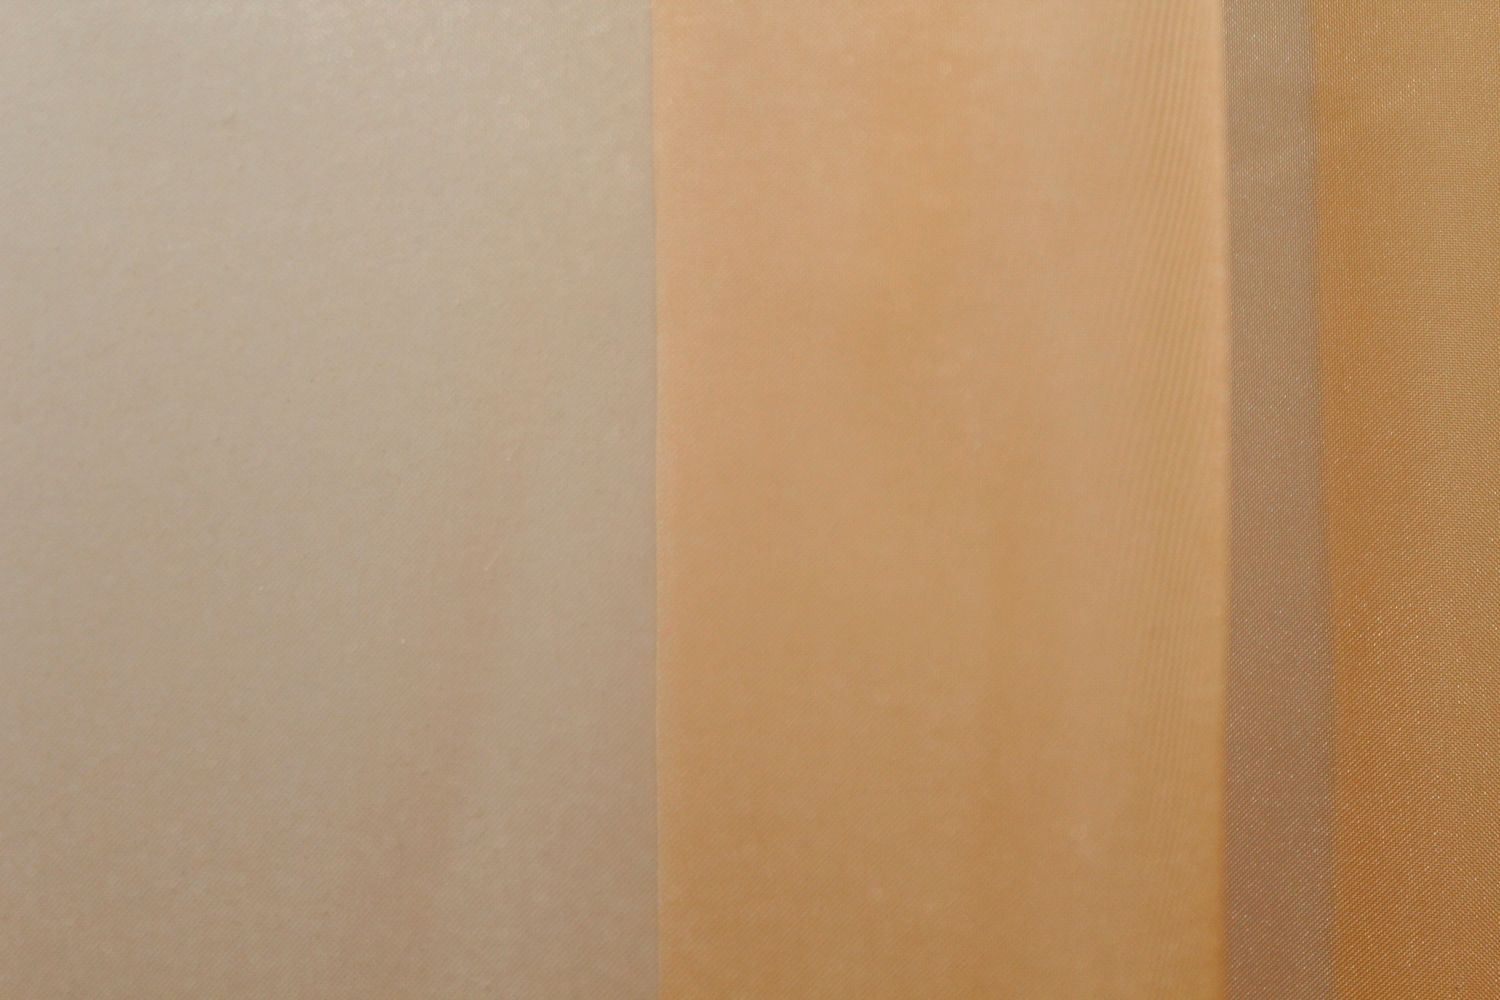 Комплект растяжка "Омбре" из шифона цвет оранжевый с белым 031дк 754т, Комплект растяжка "Омбре" (4х2,5м.+ 2шт. 1,5x2,5м.)., 1,5 м., 2,5 м., 4,0 м., 2,5 м., 2 - 3 м., Штори 2шт. 1,5x2,5м.; тюль 4х2,5м.; подхваты 2шт., В комплекте 2 шт., Тесьма